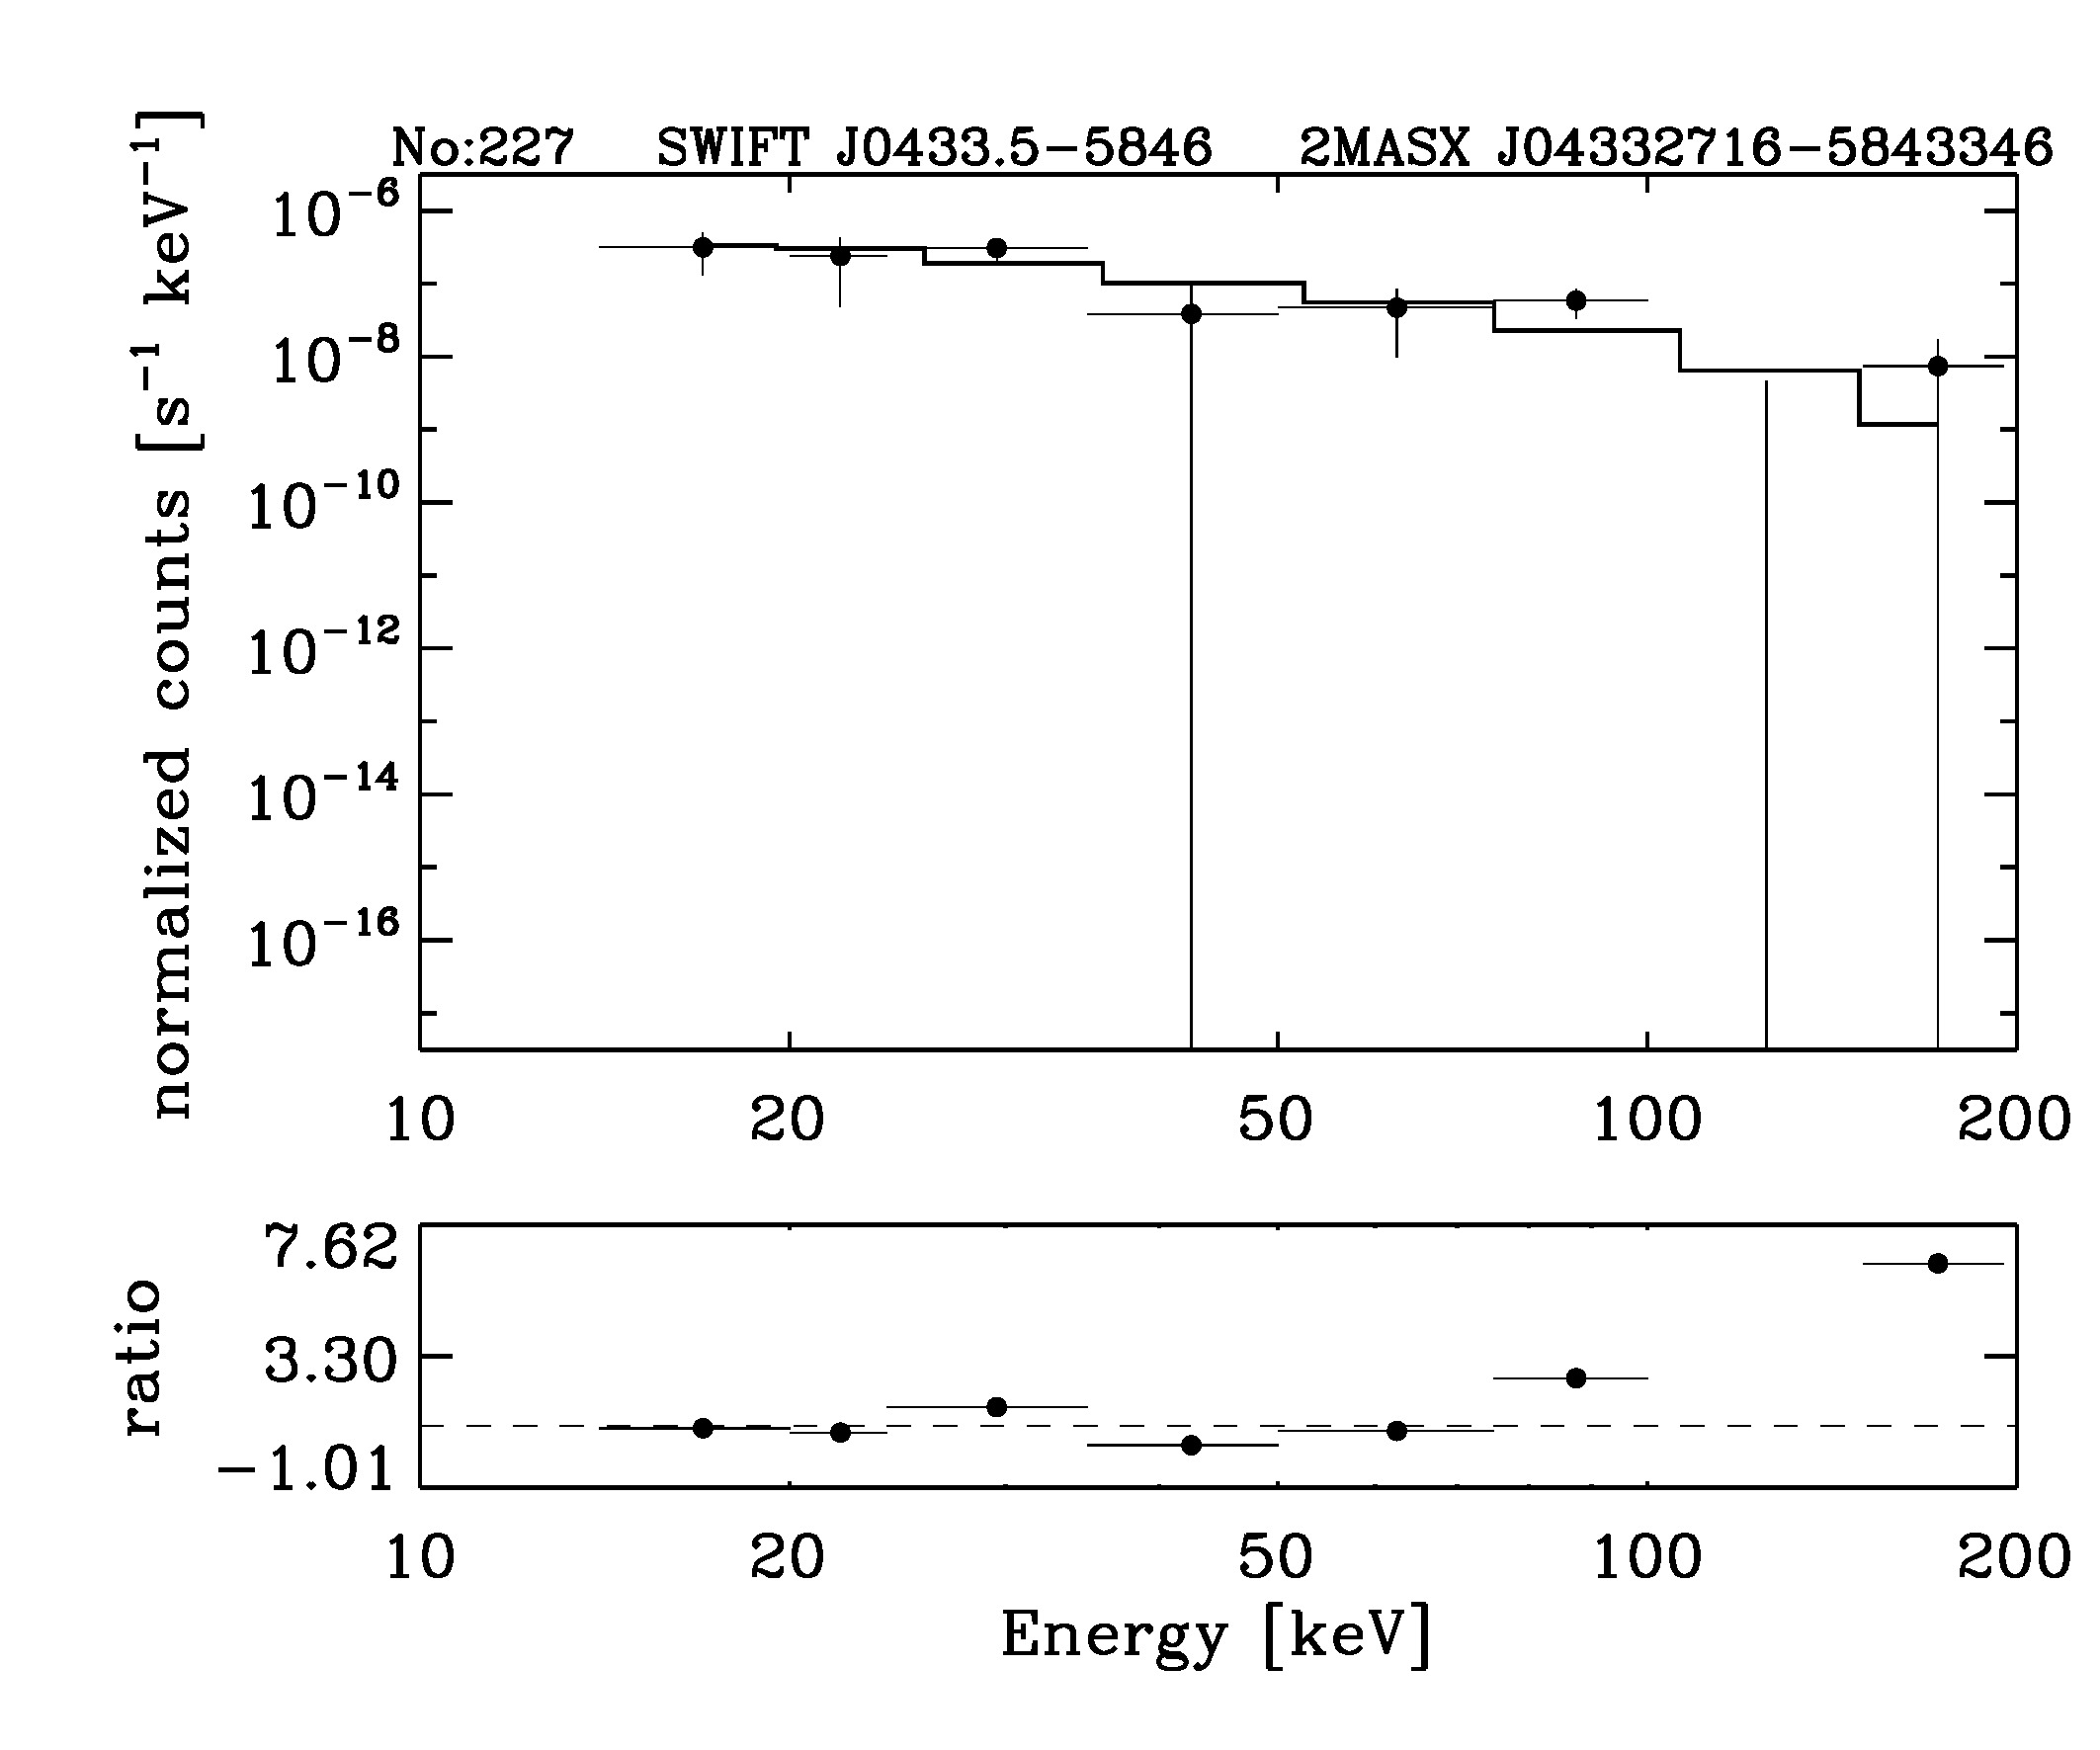 BAT Spectrum for SWIFT J0433.5-5846